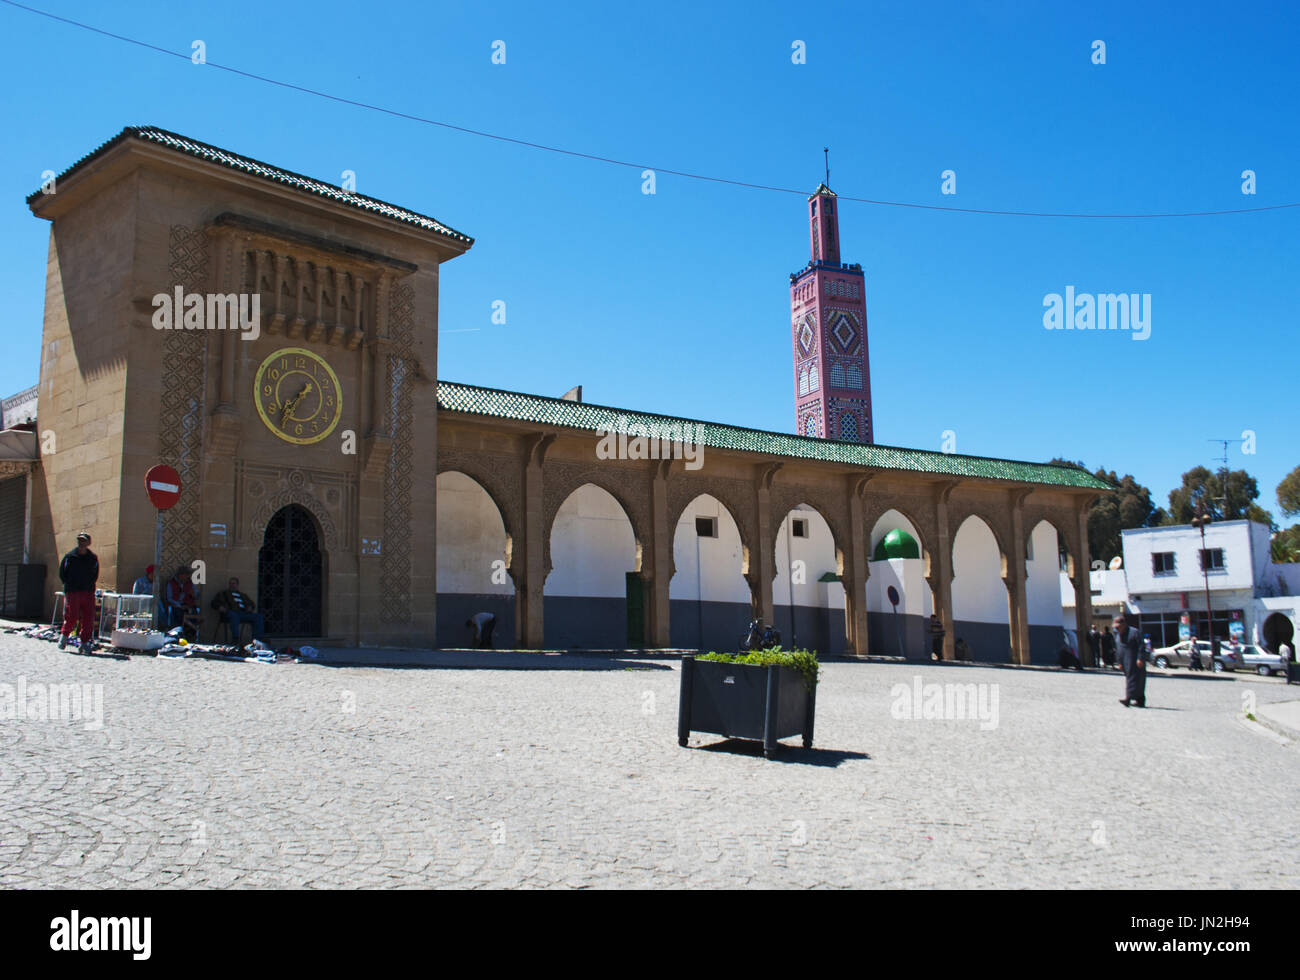 Marocco: Sidi Bou Abib moschea, una moschea si affaccia sul Grand Socco medina zona di Tangeri, costruito nel 1917 e decorata con piastrelle policrome Foto Stock